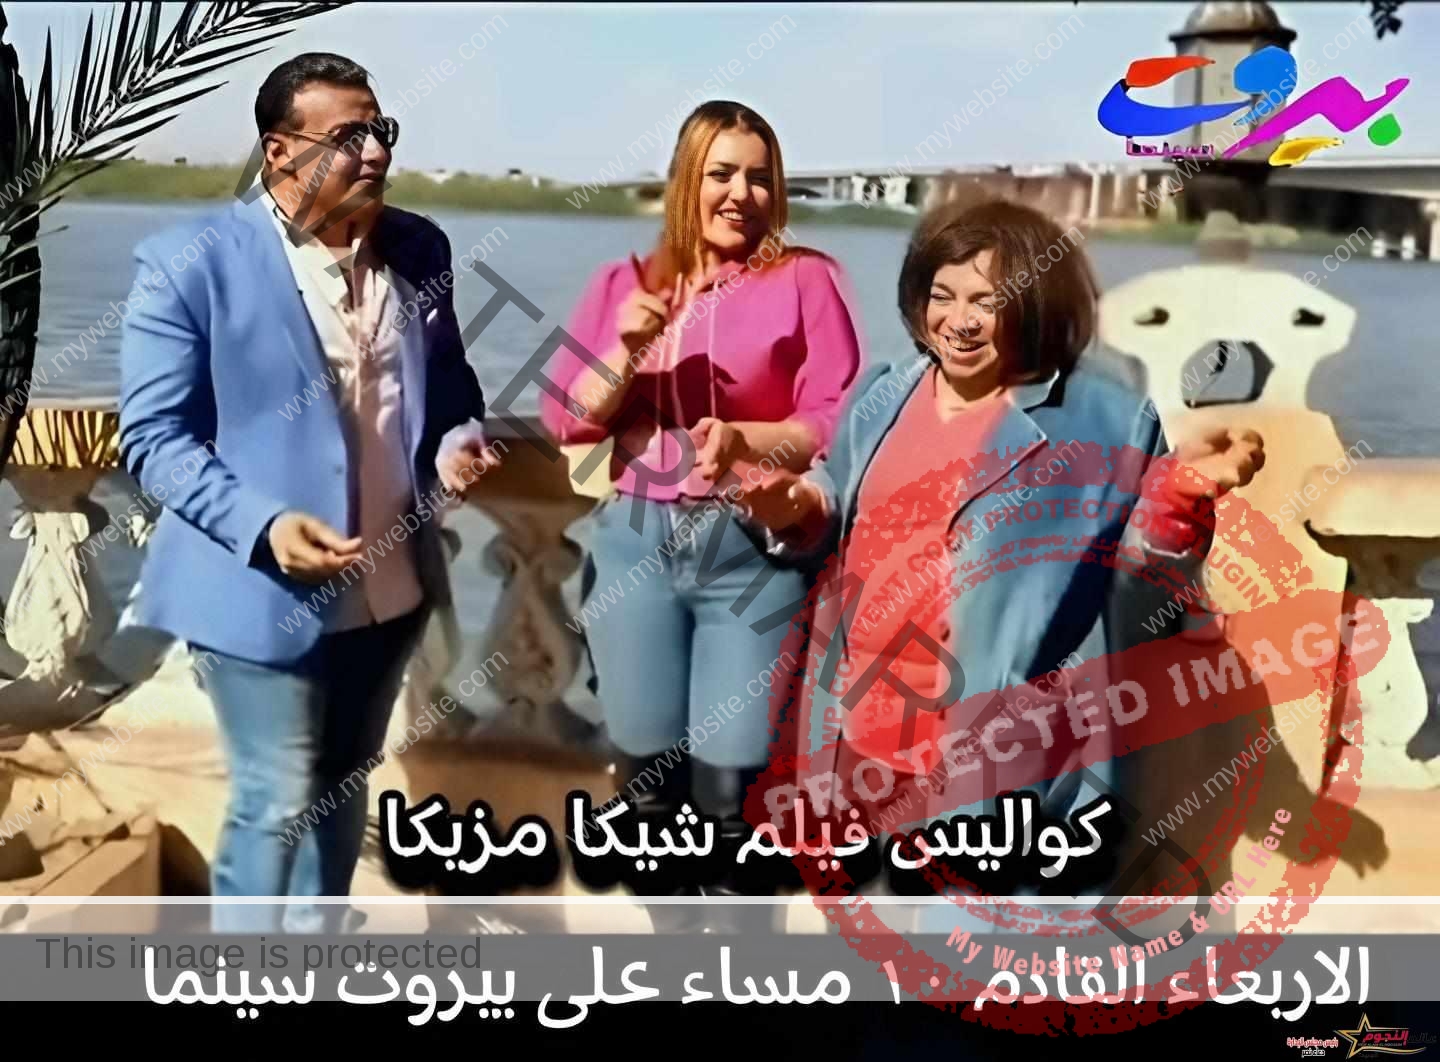 وائل فل يستضيف الفنانة "سارة الخطيب" على راديو الفراتي FM